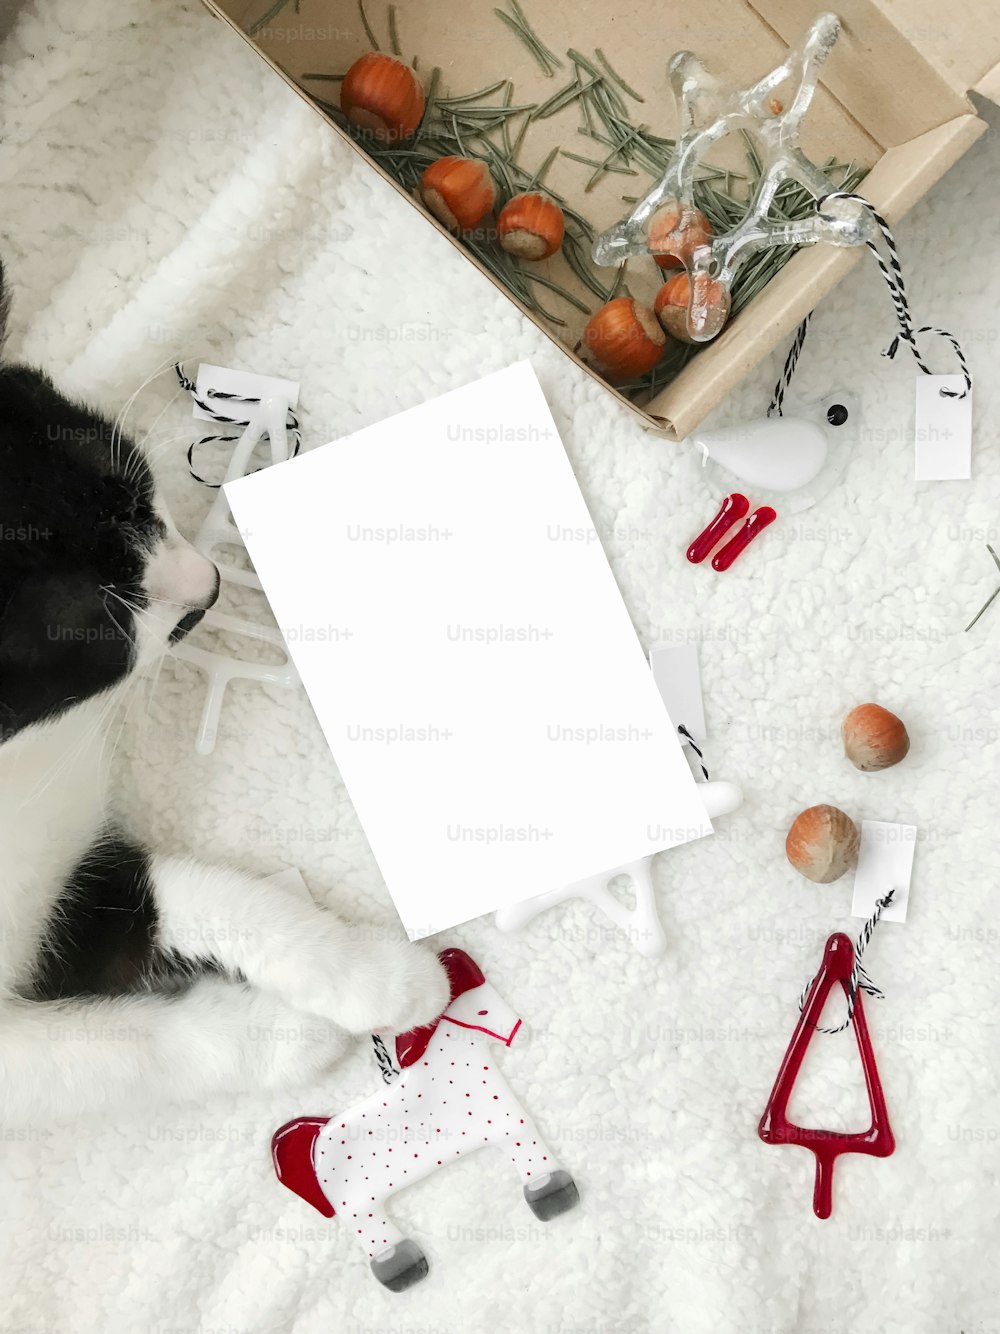 크리스마스 인사말 카드 모형, 텍스트를 위한 공간이 있는 빈 흰색 엽서, 흰색 부드러운 담요에 현대적인 축제 유리 장신구를 들고 있는 귀여운 고양이 발. 상위 뷰